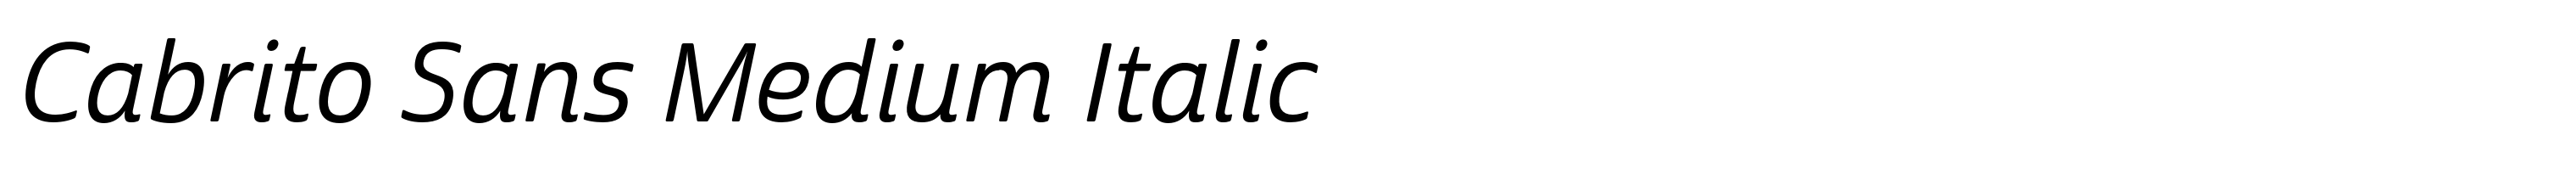 Cabrito Sans Medium Italic